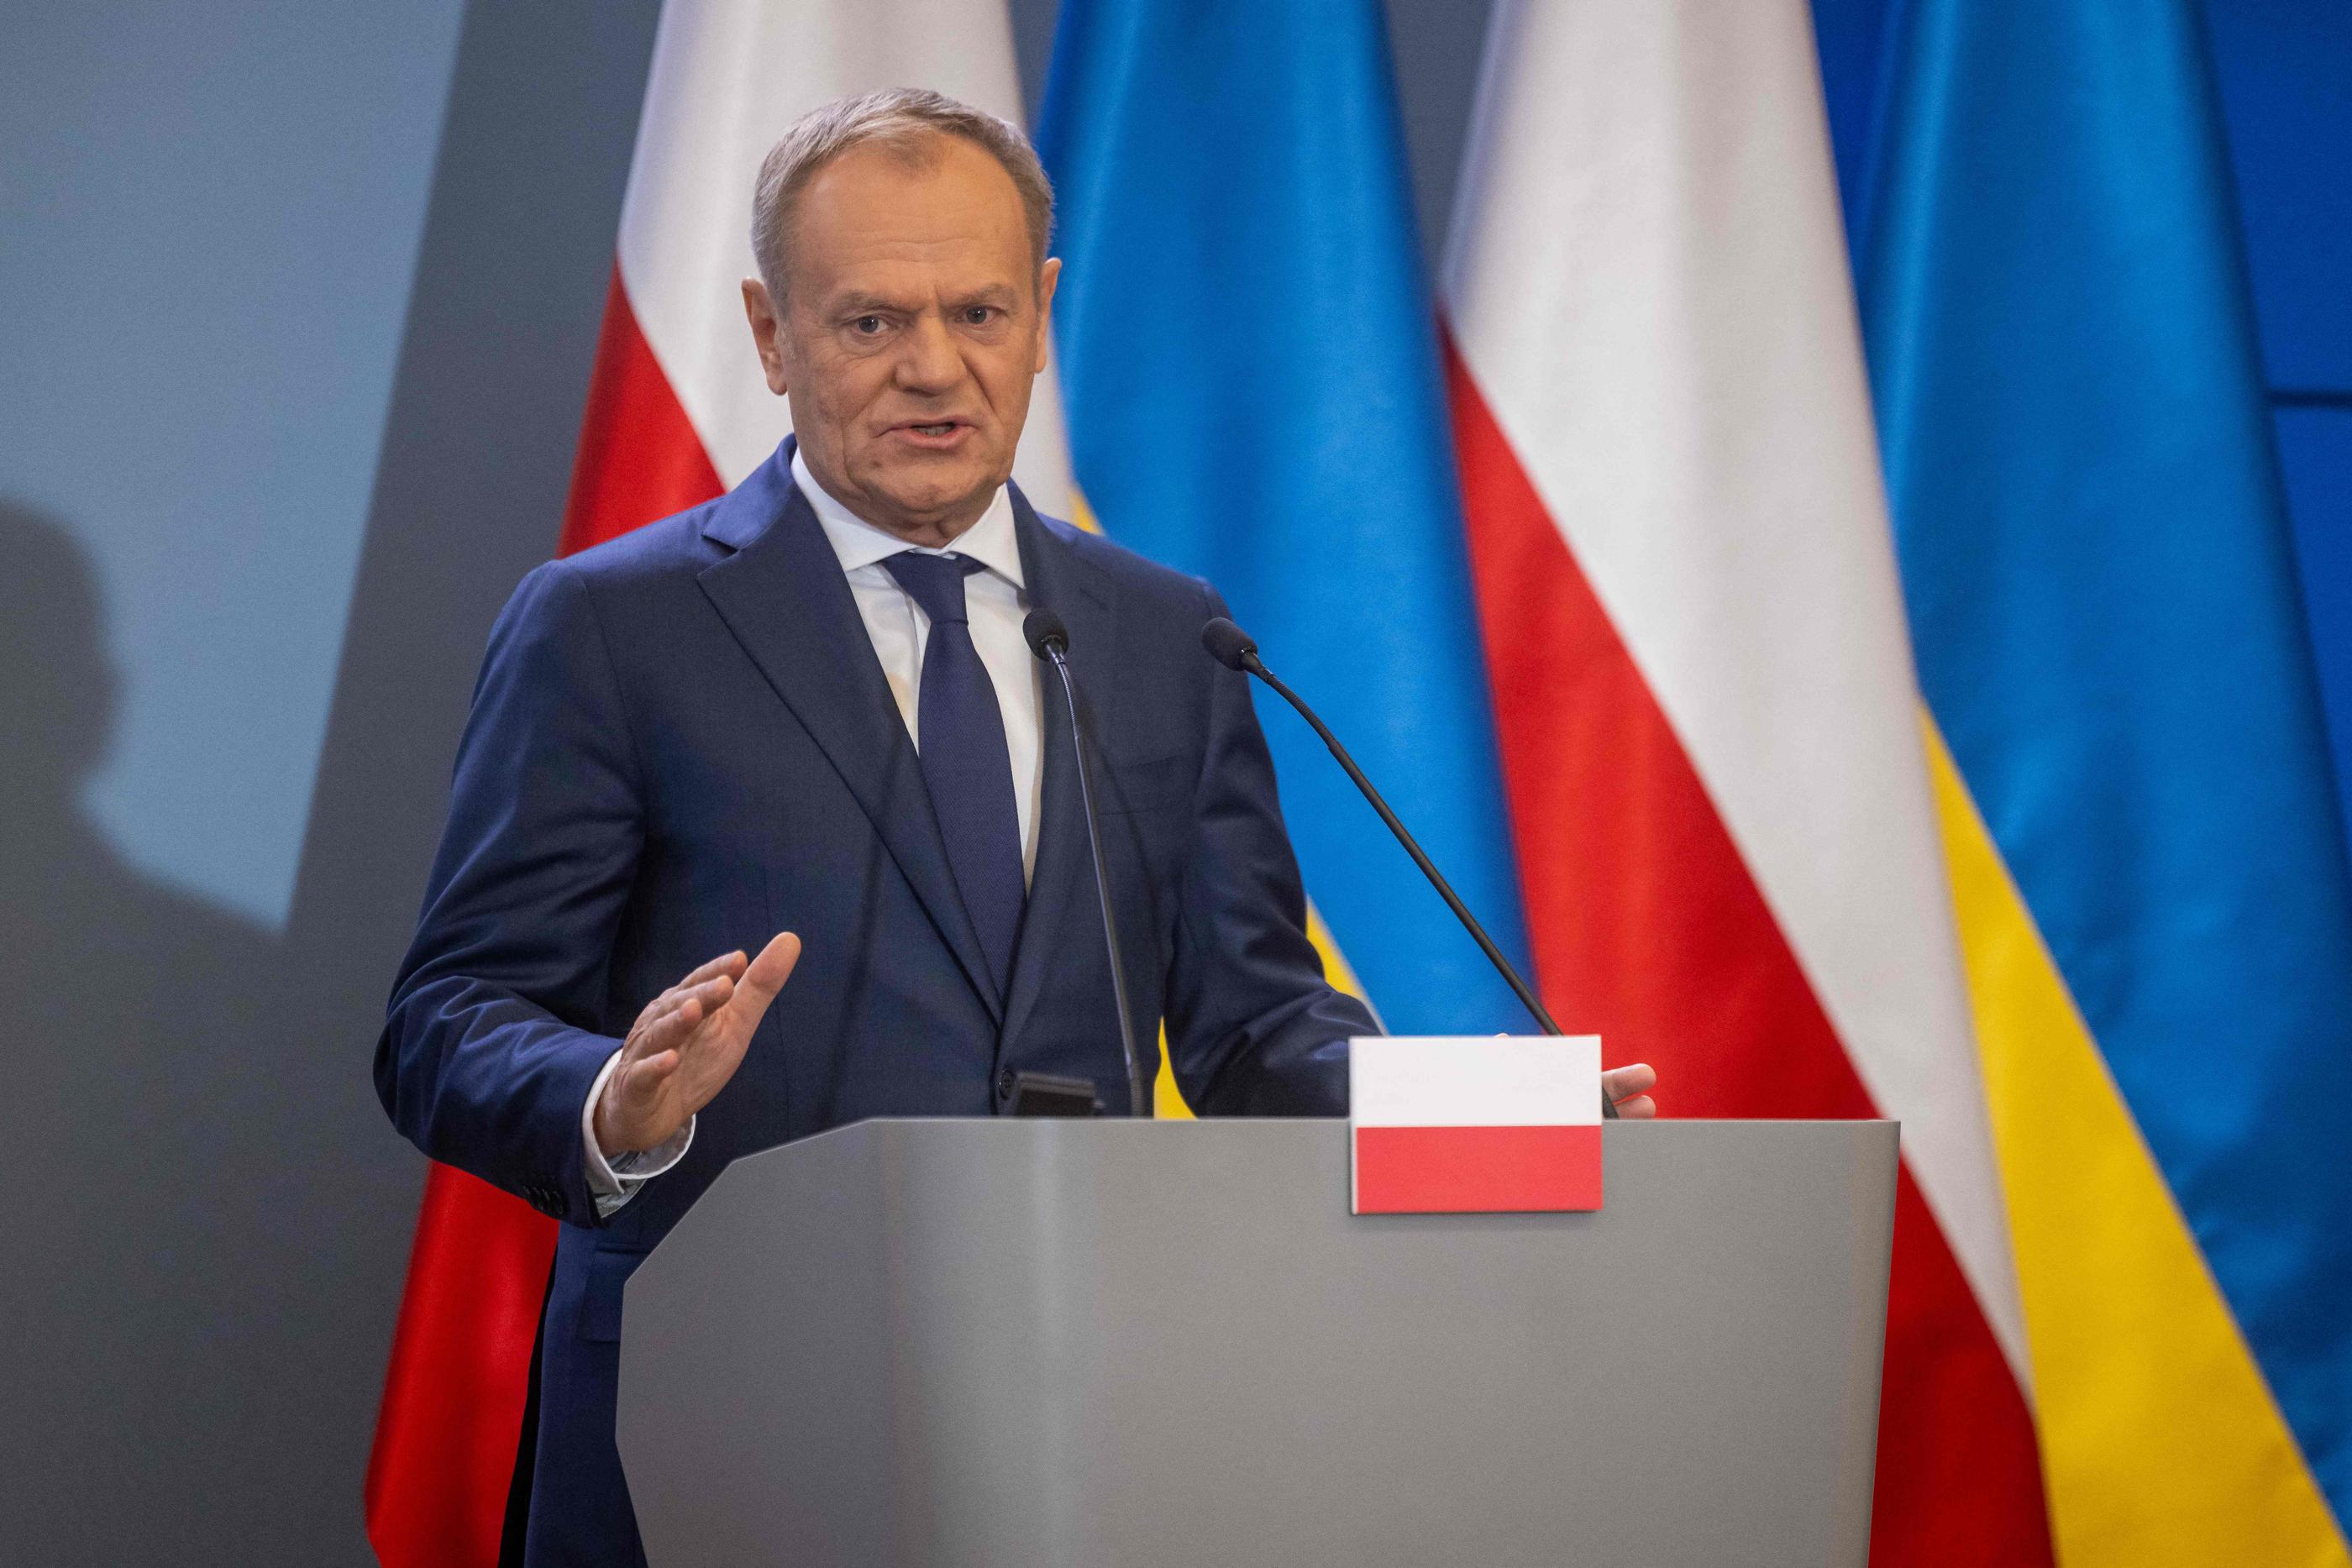 Les relations entre la Pologne, dirigée par Donald Tusk, et la Russie se sont tendues à nouveau cette semaine. AFP/Wojtek Radwanski